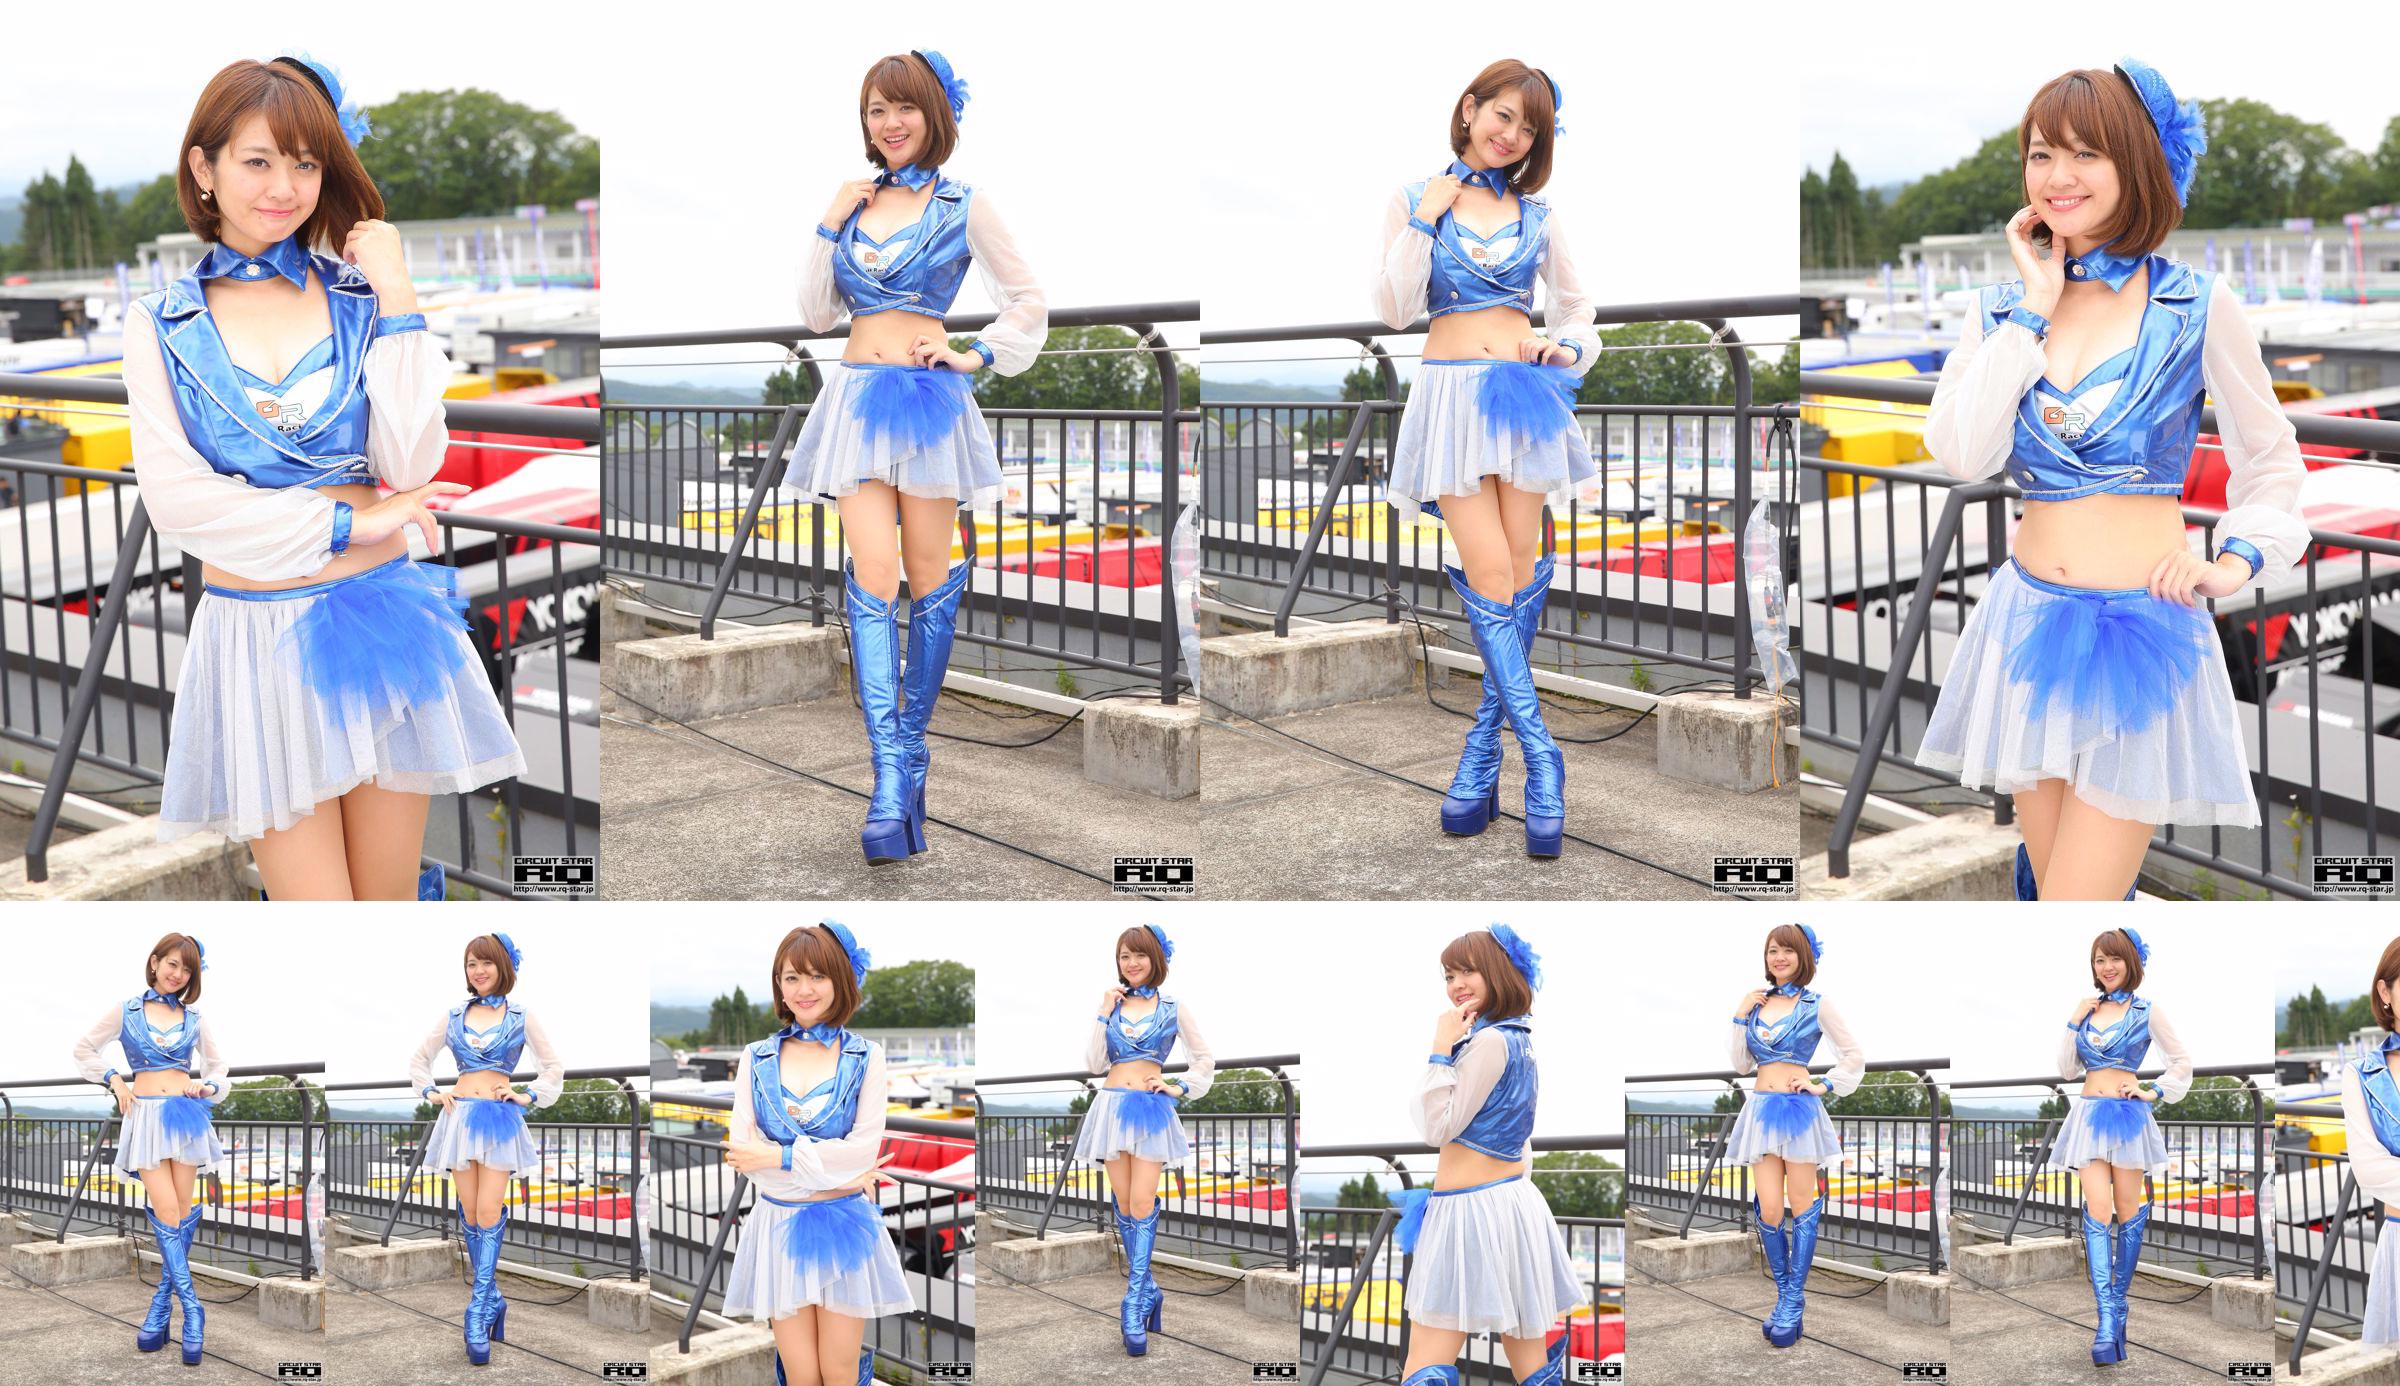 Hina Yaginuma Yananuma Haruna "RQ Costume" (somente foto) [RQ-STAR] No.243a4a Página 1